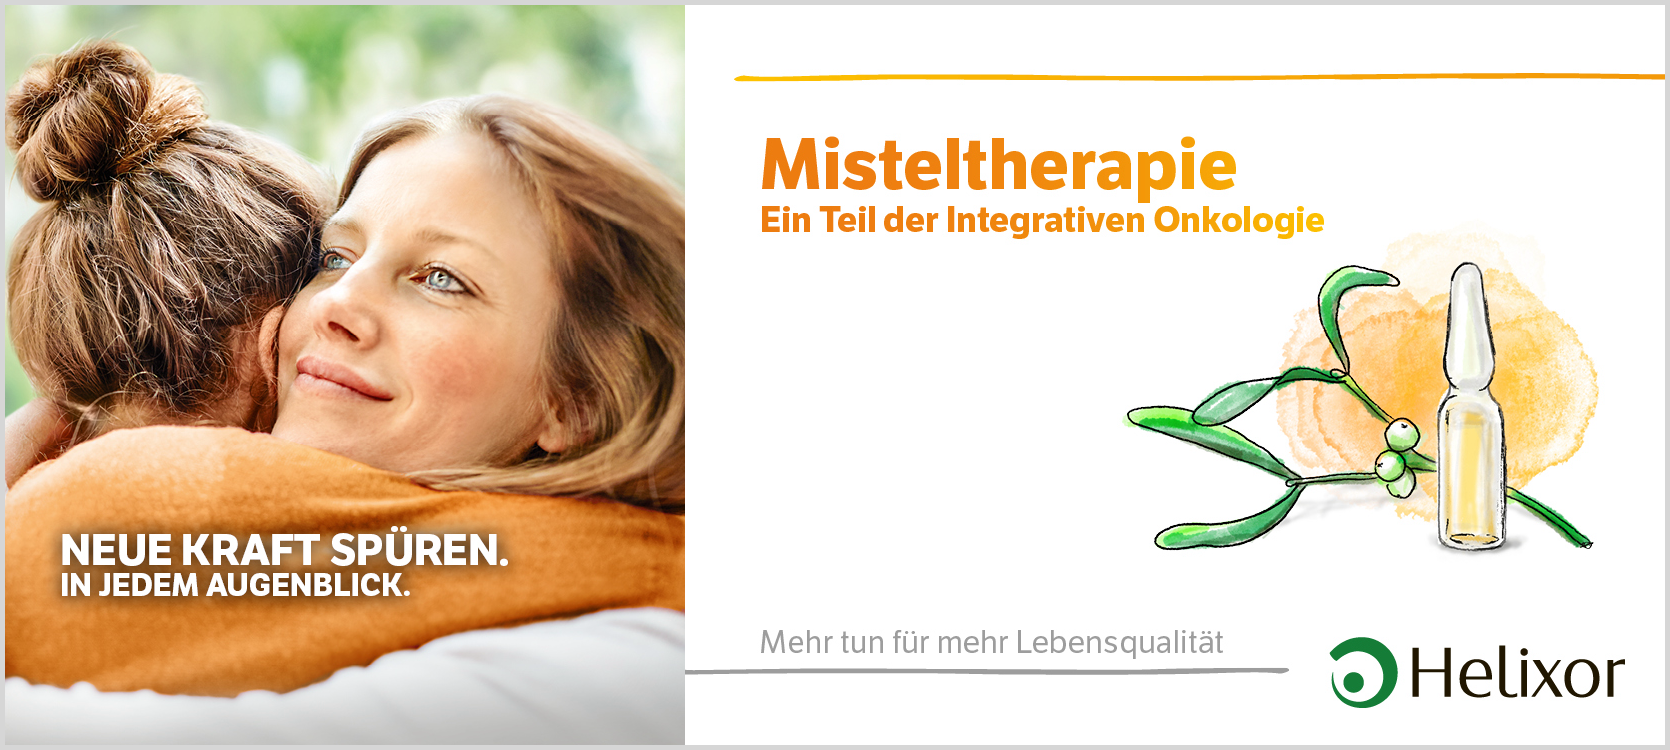 Misteltherapie 